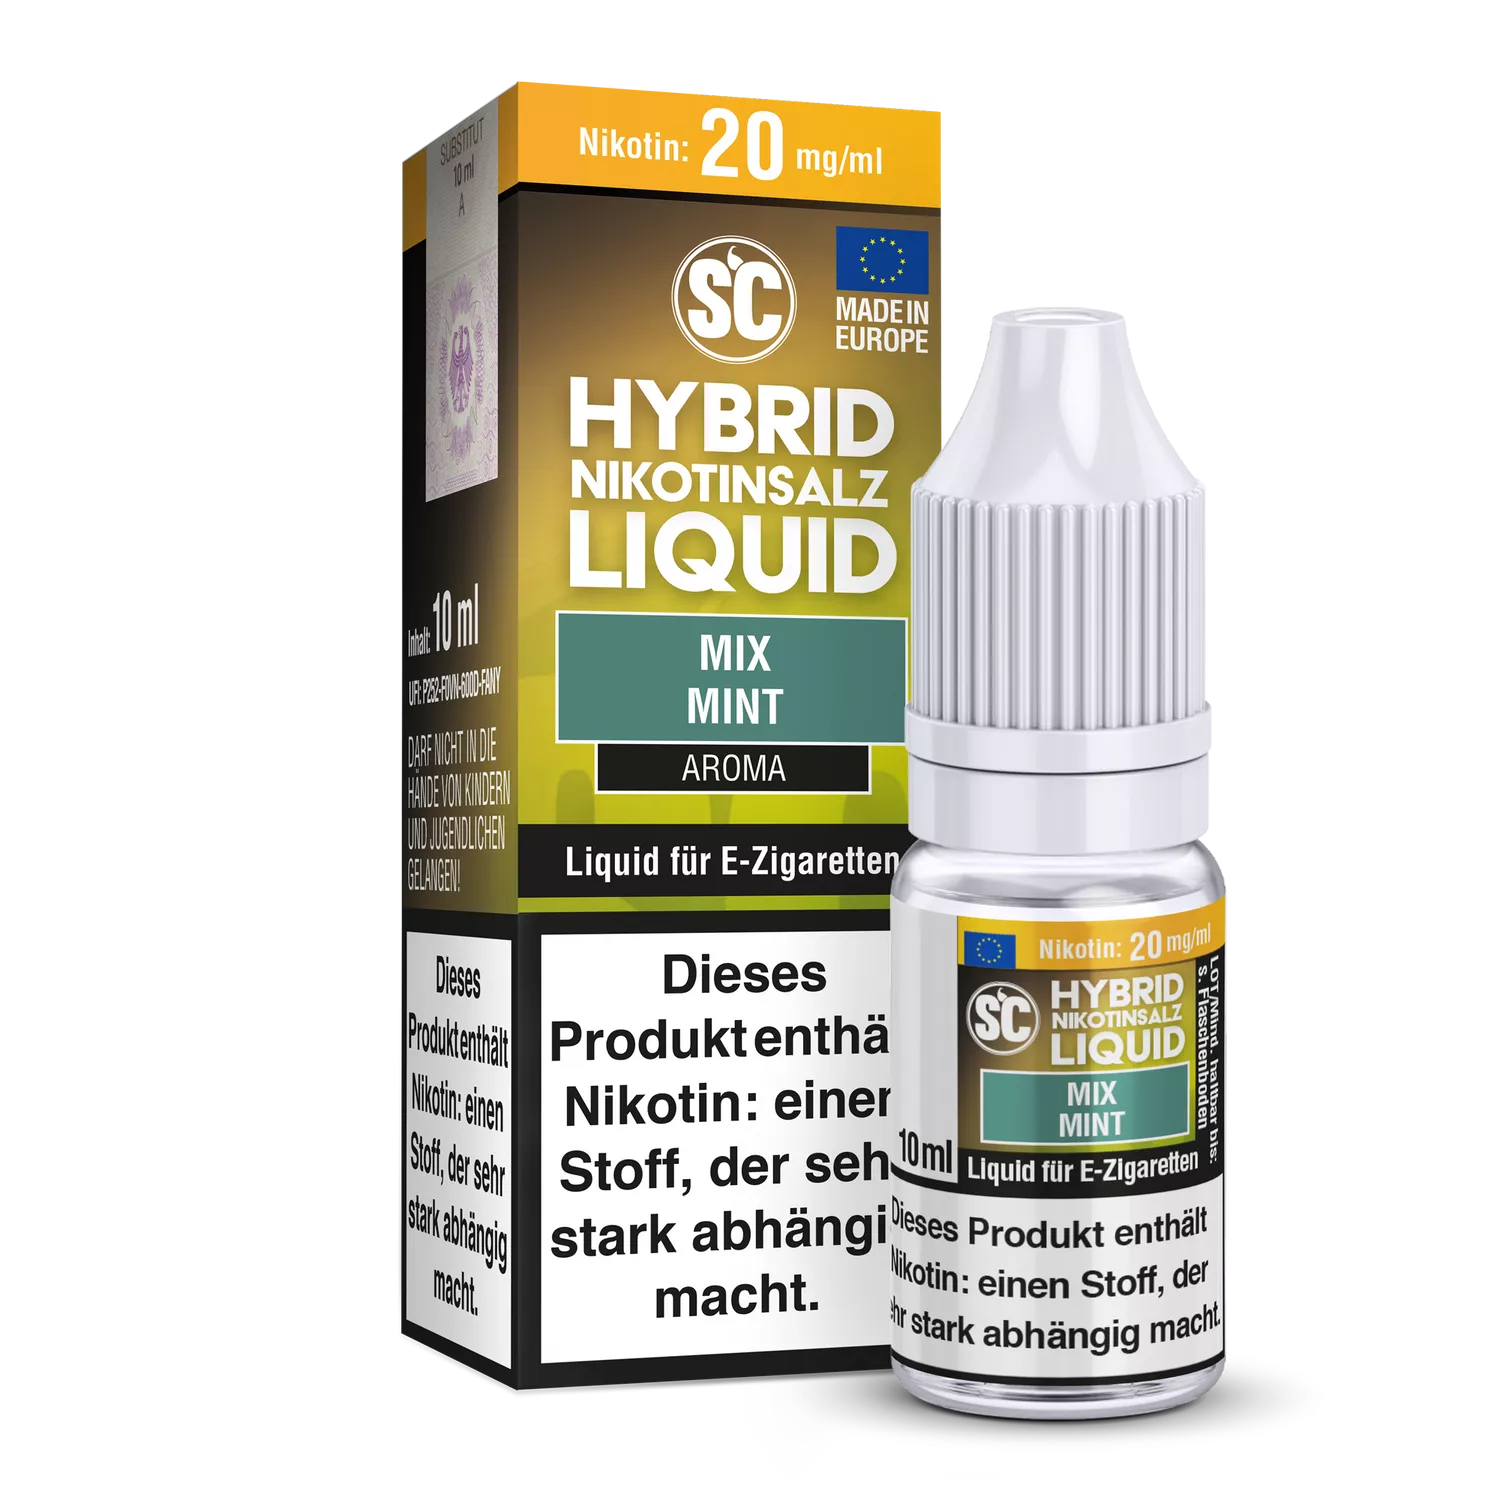 SC Hybrid Nikotinsalz Liquid Mix Mint - 20mg/ml